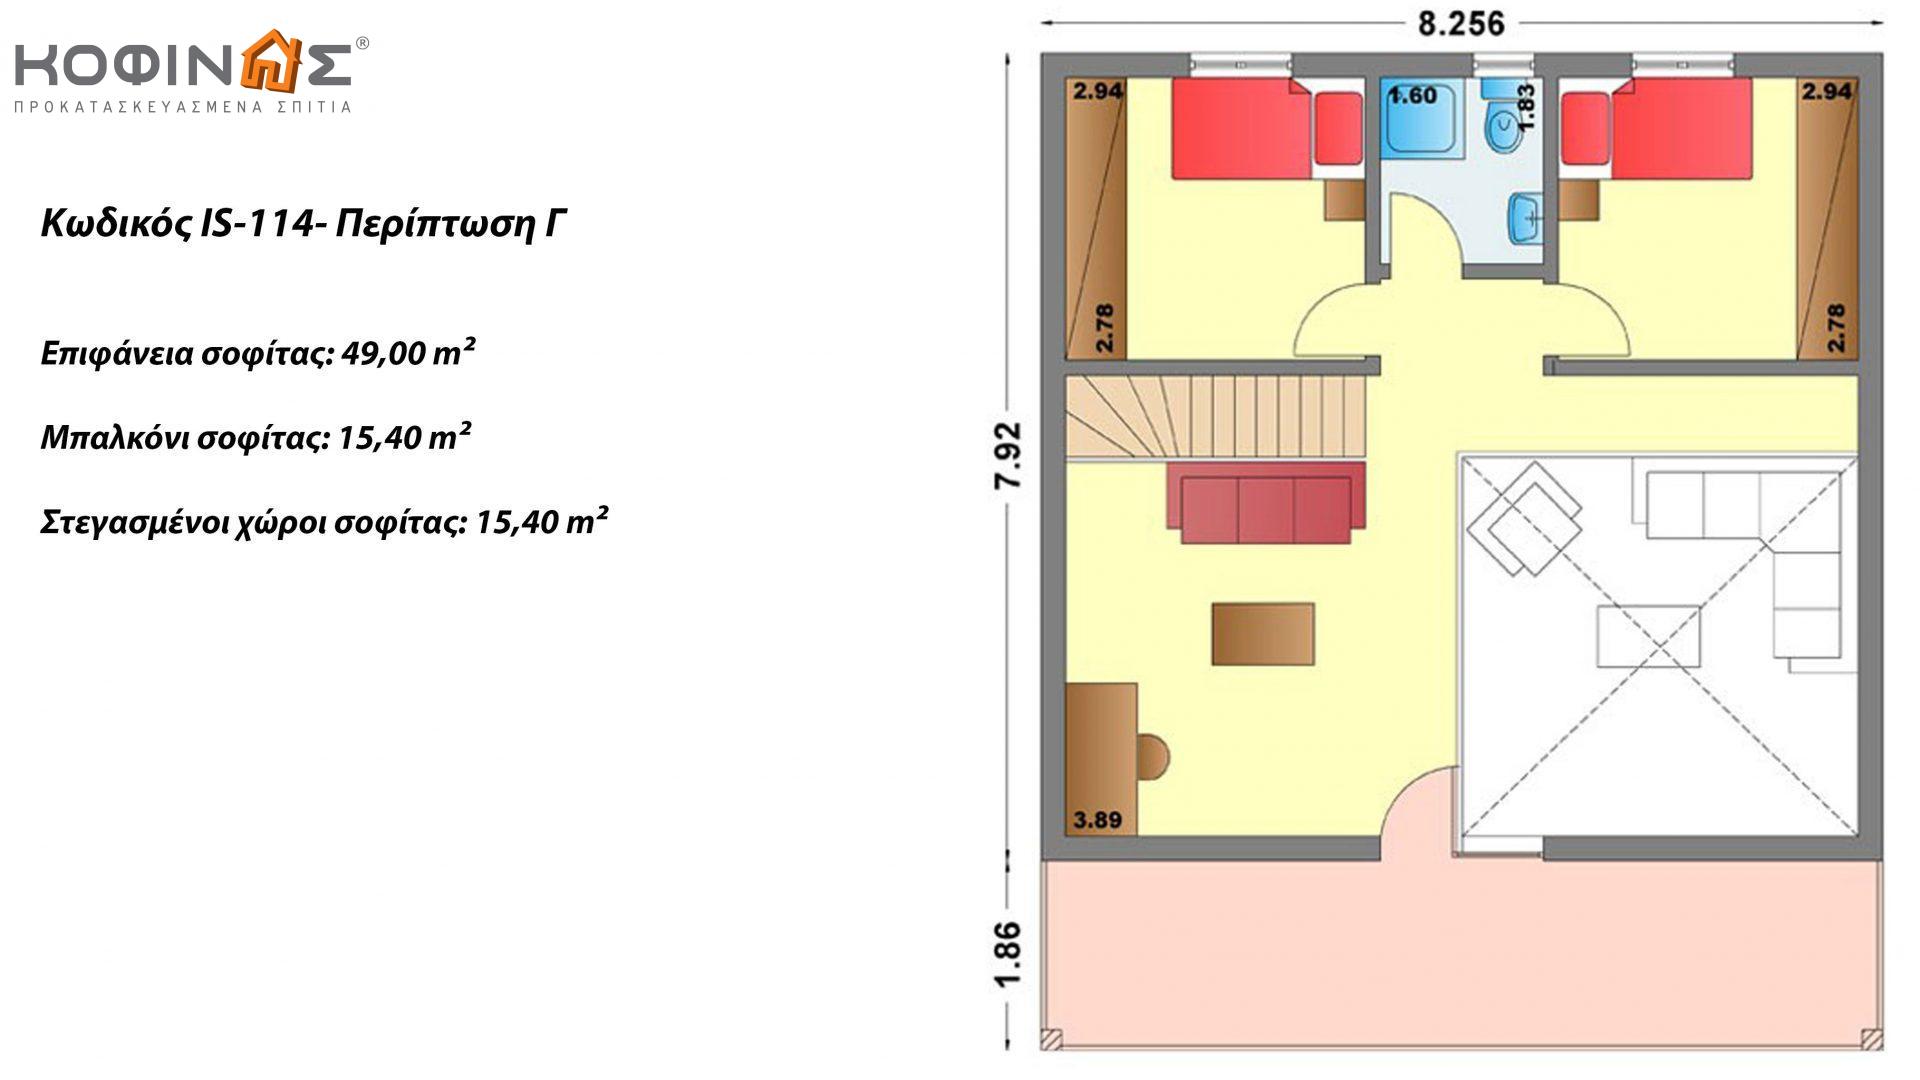 Ισόγεια Κατοικία με Σοφίτα IS-114, συνολικής επιφάνειας 114,40 τ.μ. ,συνολική επιφάνεια στεγασμένων χώρων 30,80 τ.μ., μπαλκόνι 15,40τ.μ.